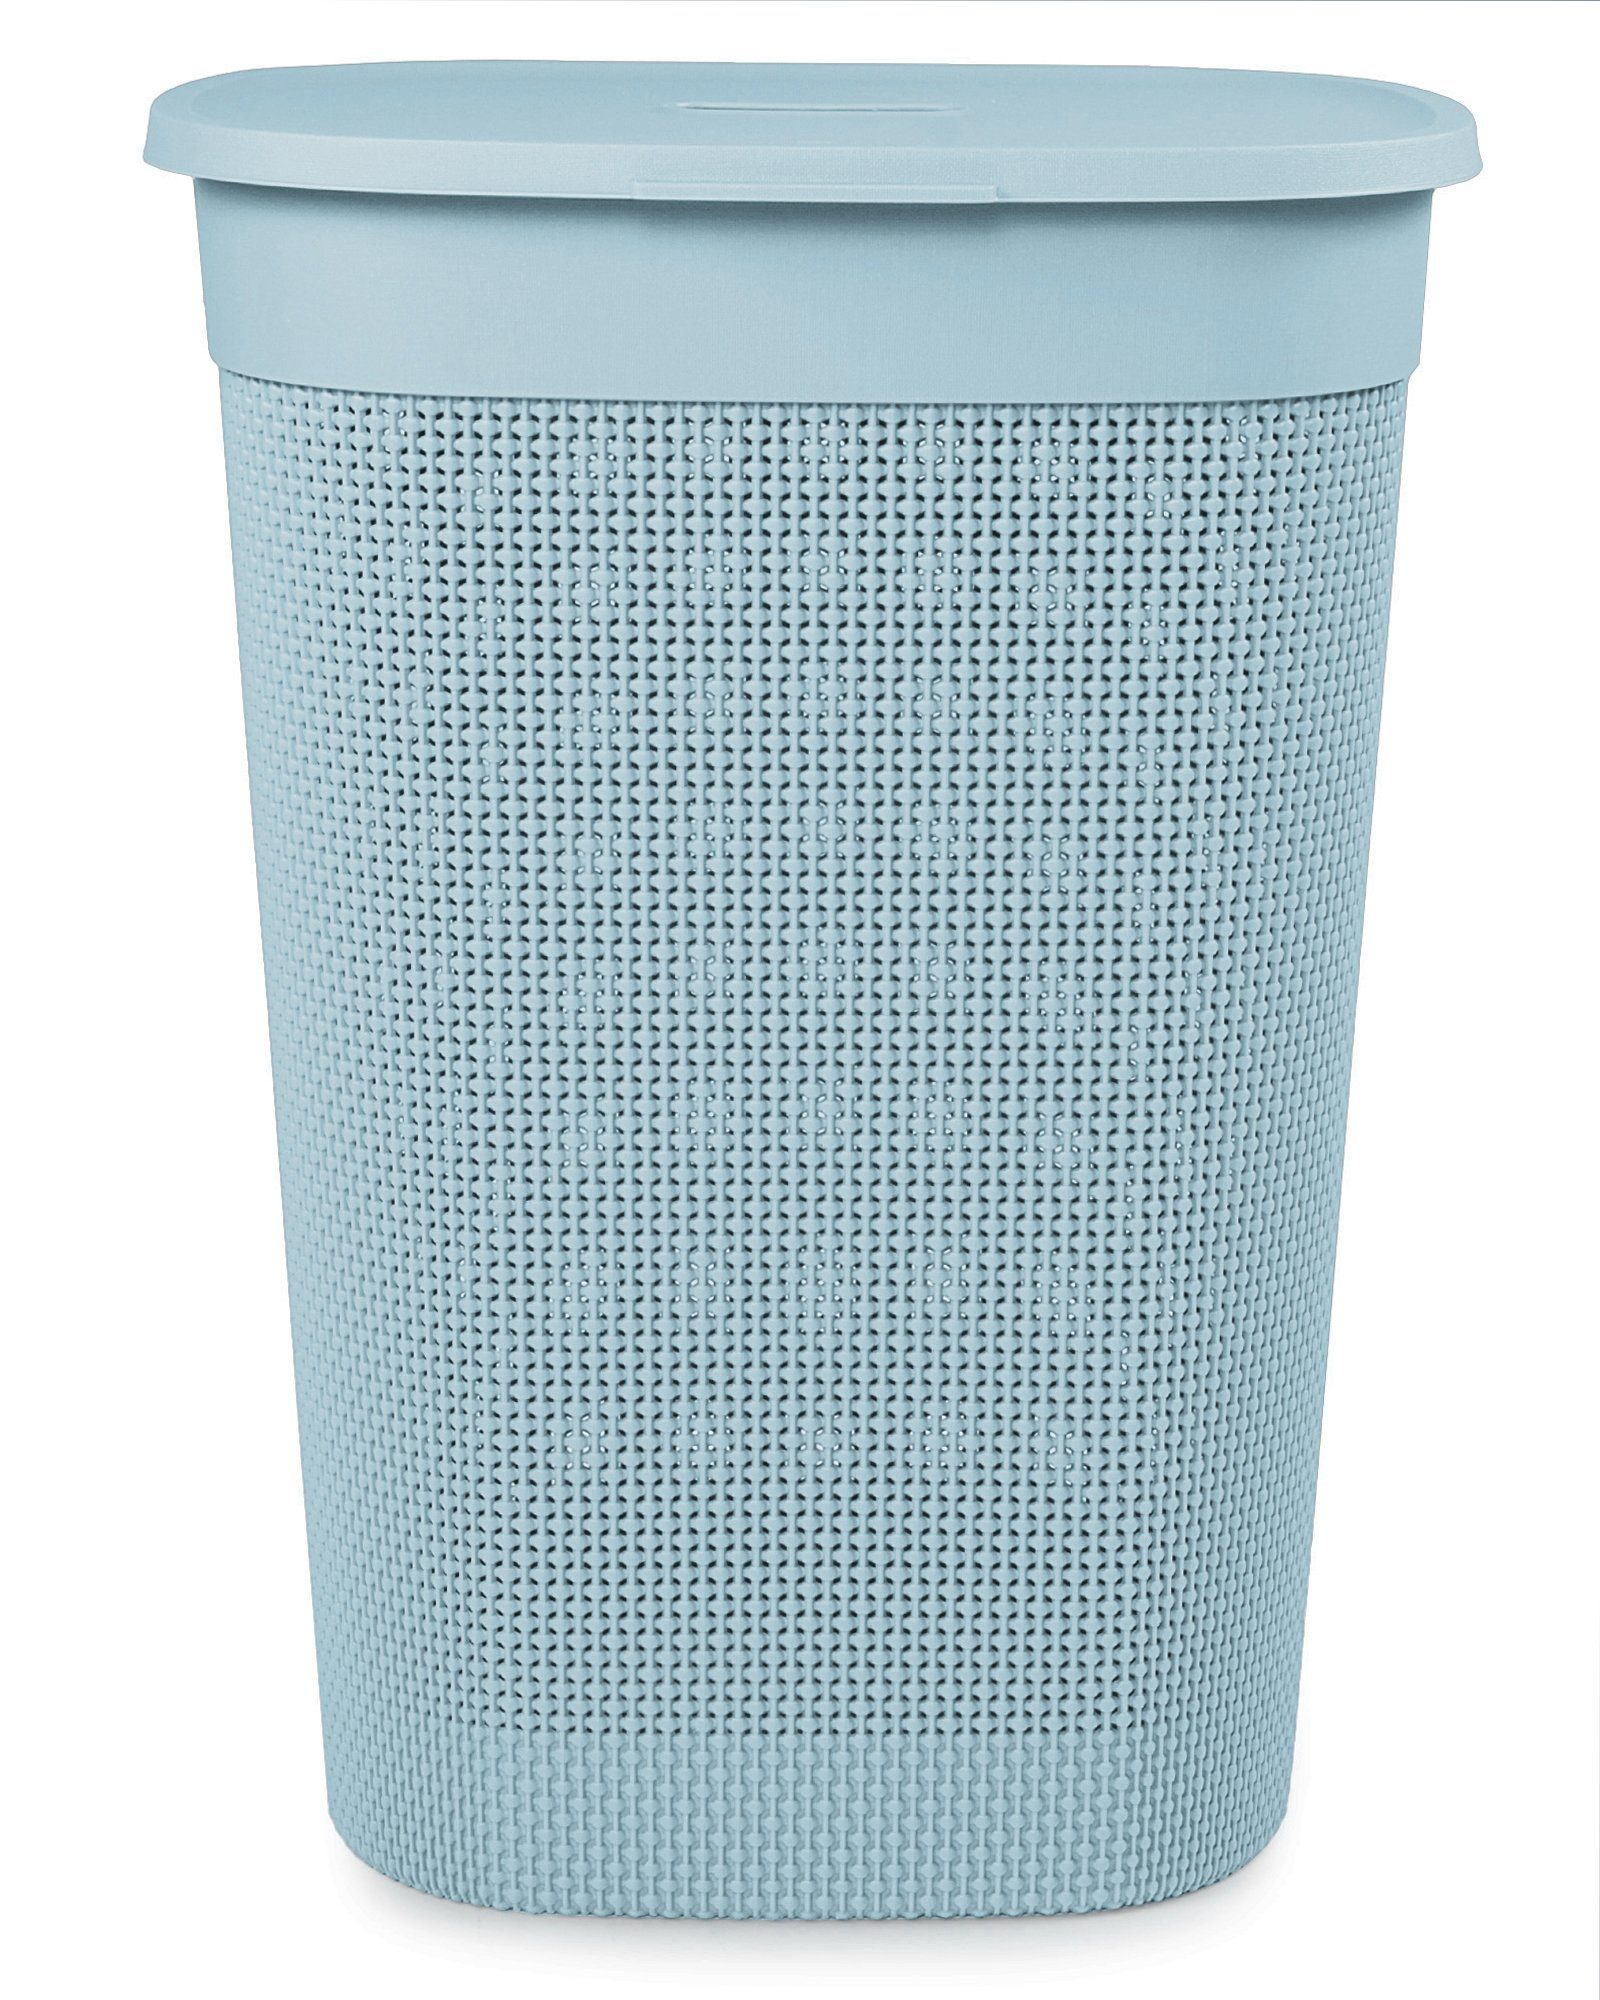 ONDIS24 Wäschebox Wäschekorb Filo aus Kunststoff 55 Liter, gut belüftet, neues italienisches Design, edle Verarbeitung Blau